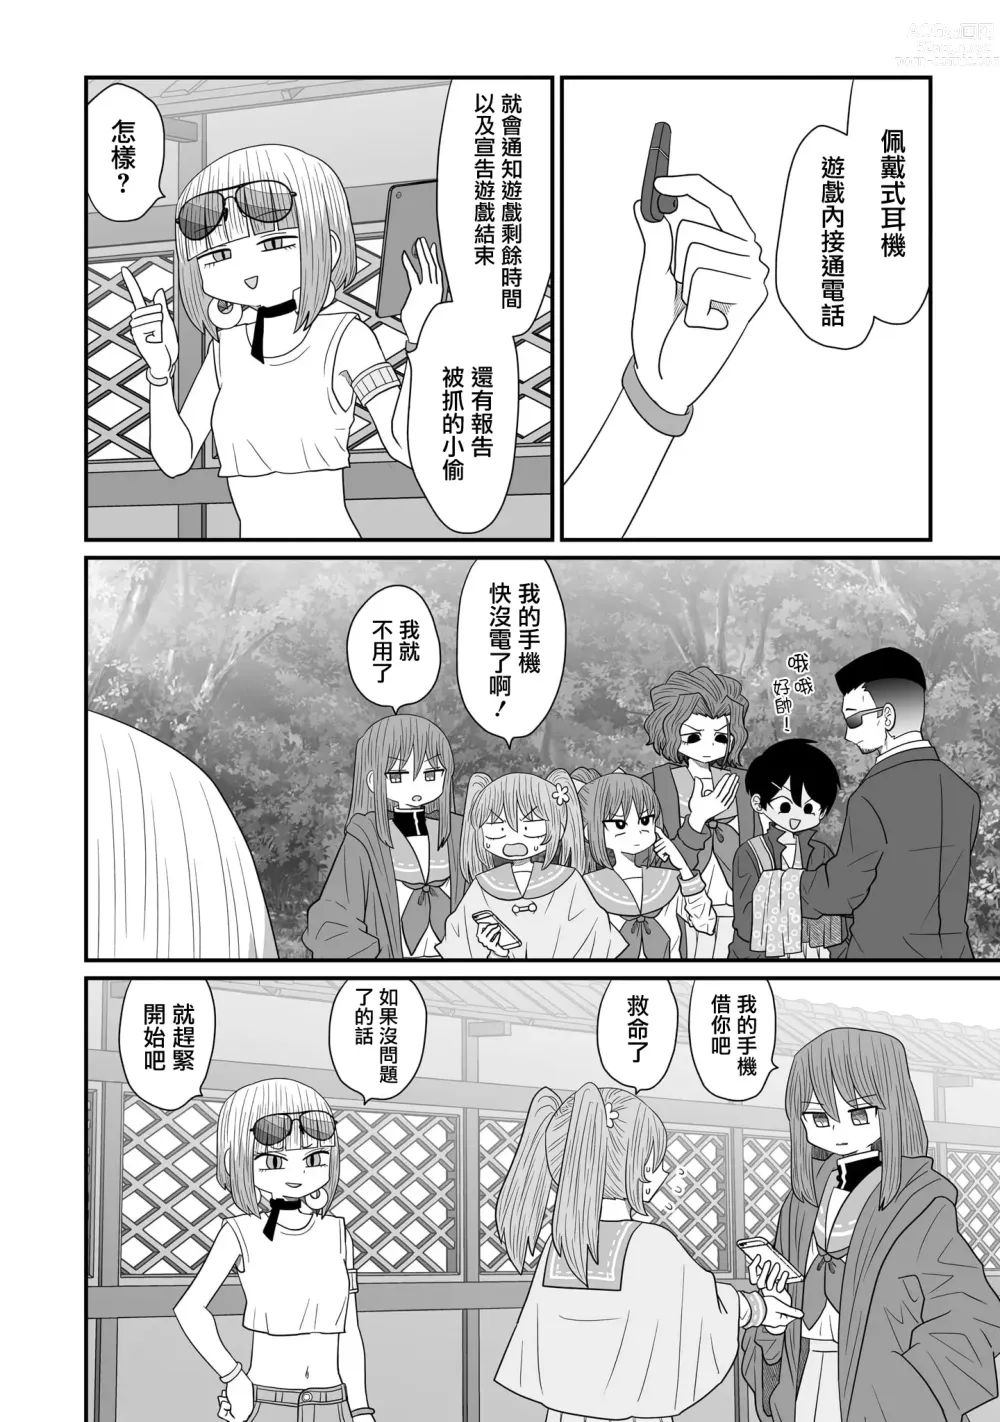 Page 464 of doujinshi Warui ga Watashi wa Yuri ja Nai 丨 雖然很抱歉但我不是百合